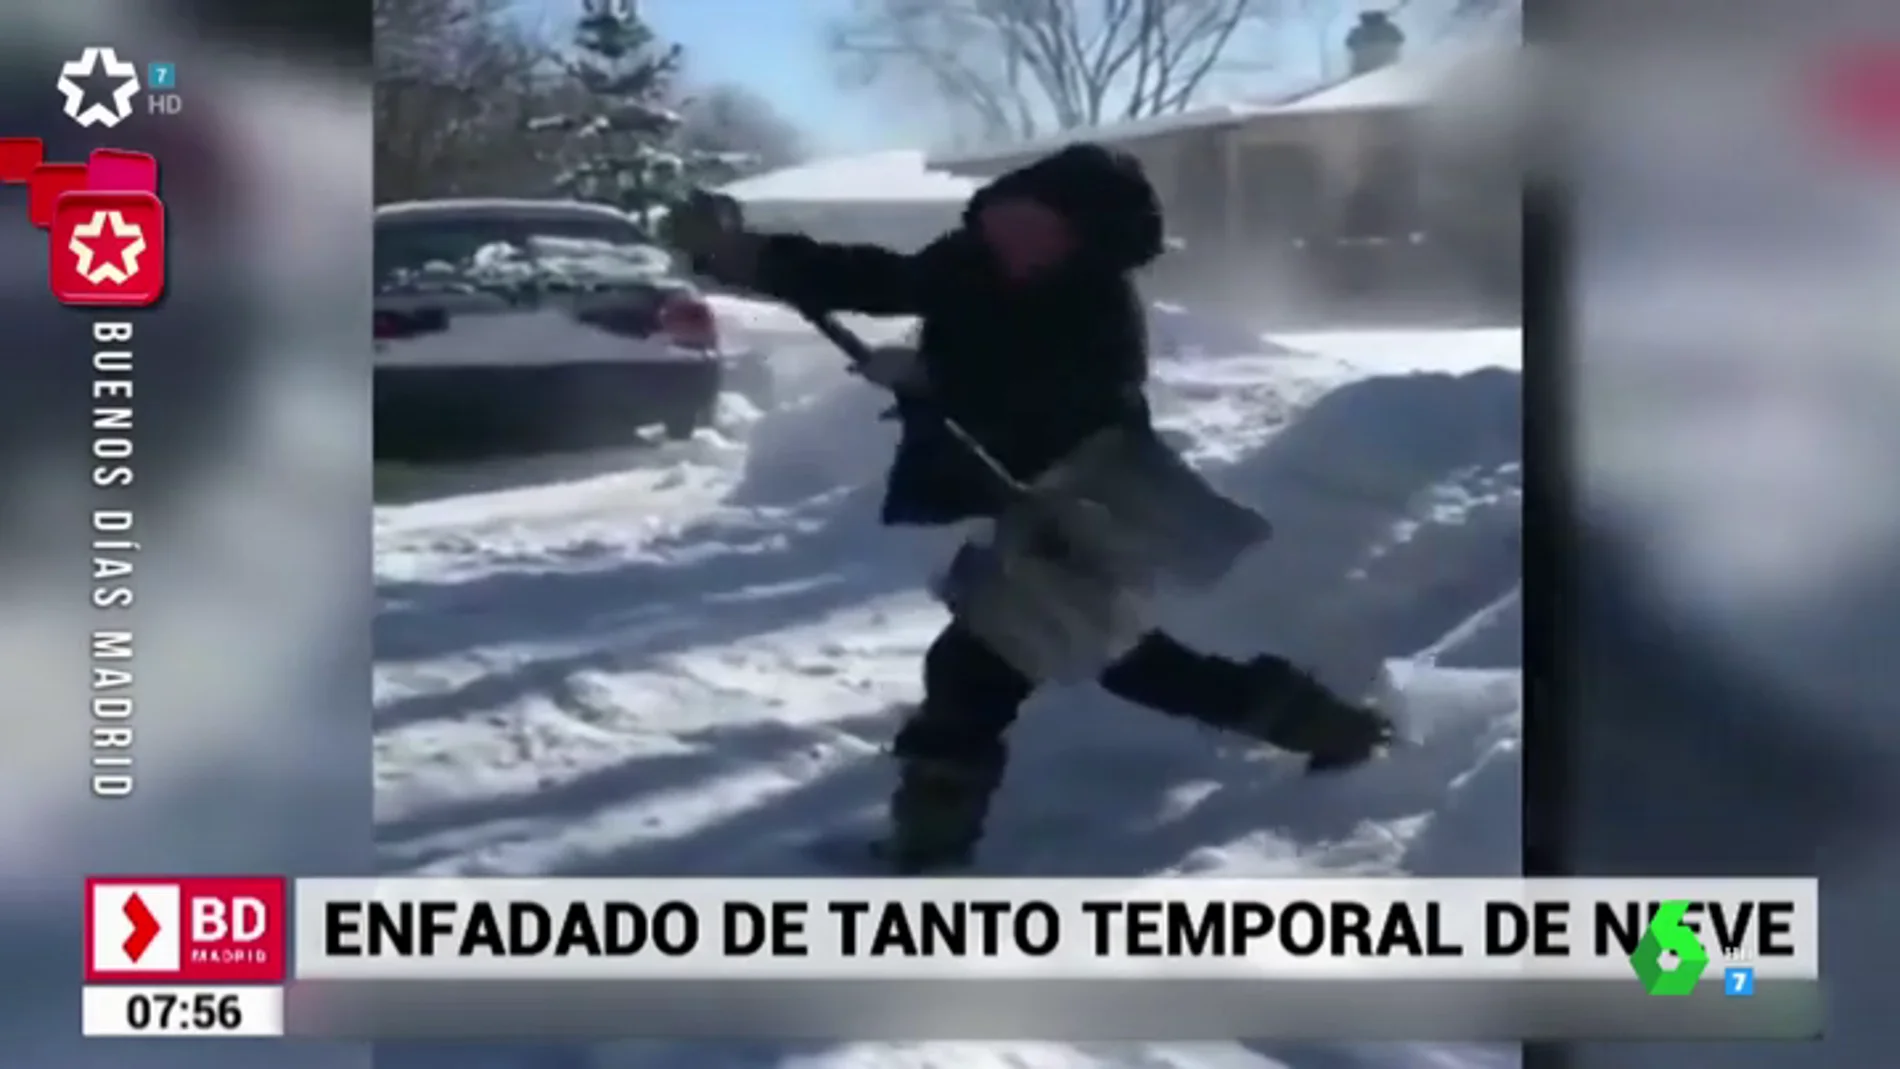 La divertida caída de un hombre en pleno enfado por tener que quitar la nieve de delante de su casa